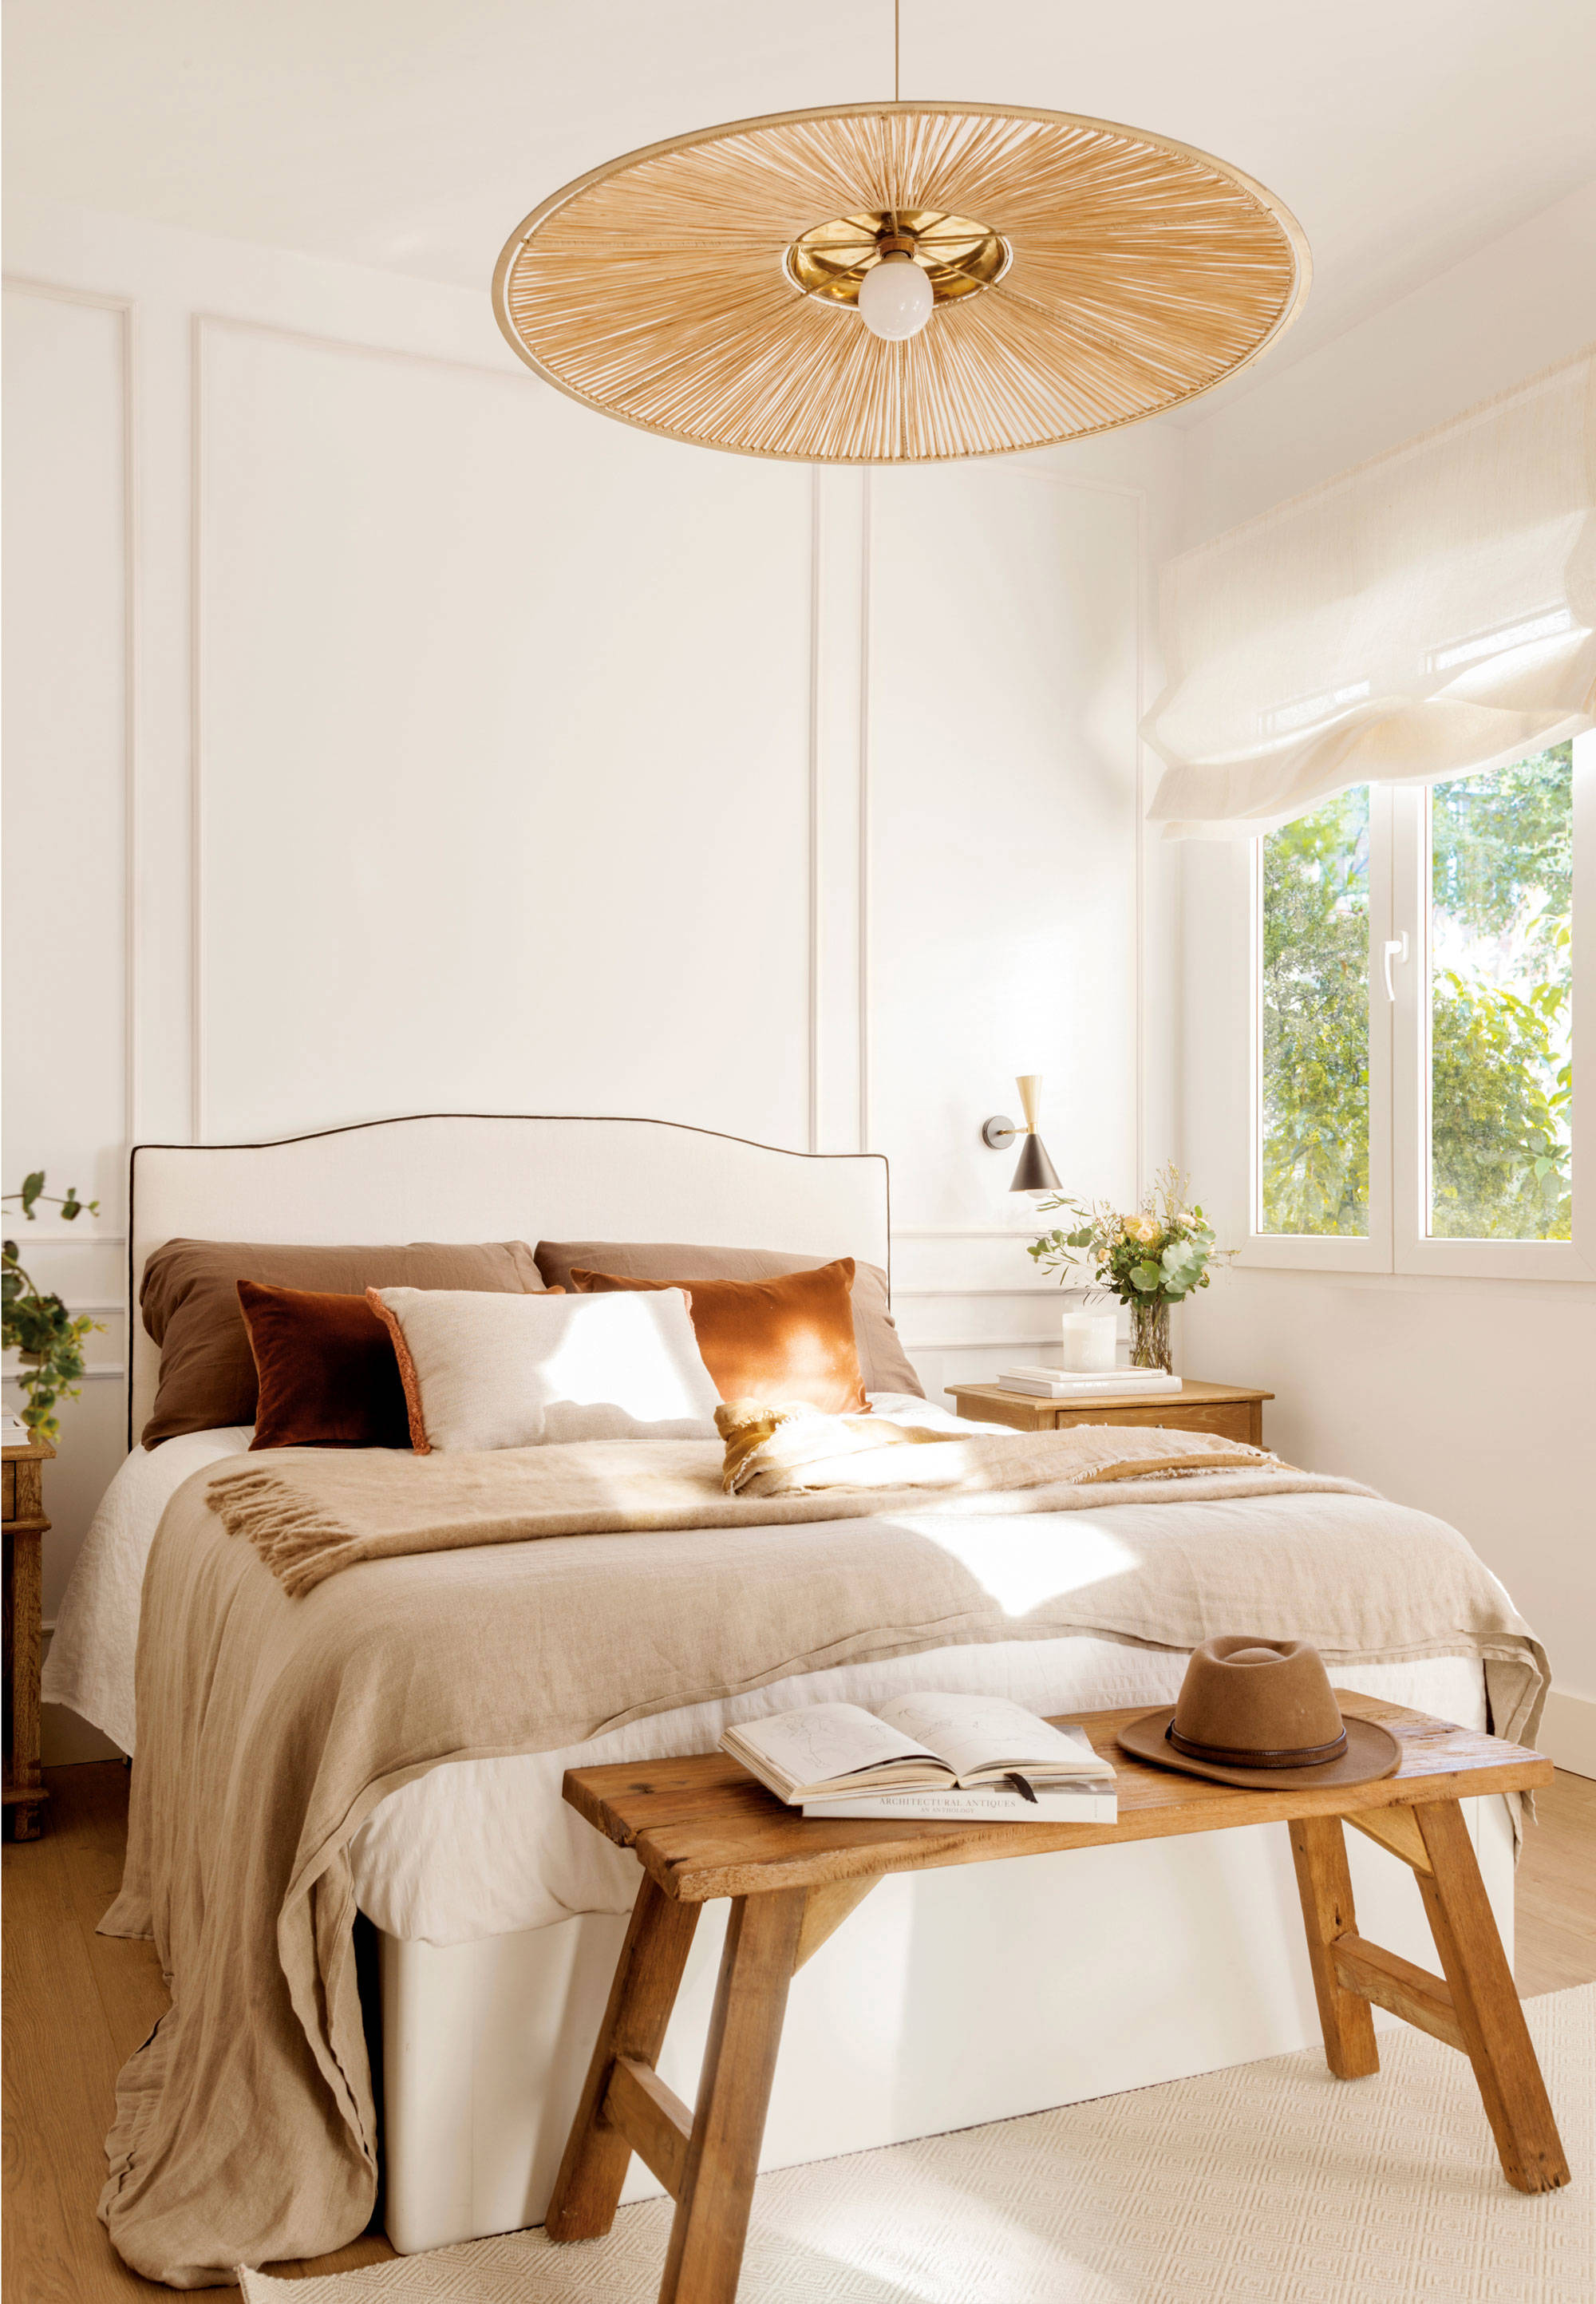 Dormitorio decorado en blanco y madera con molduras en la pared.